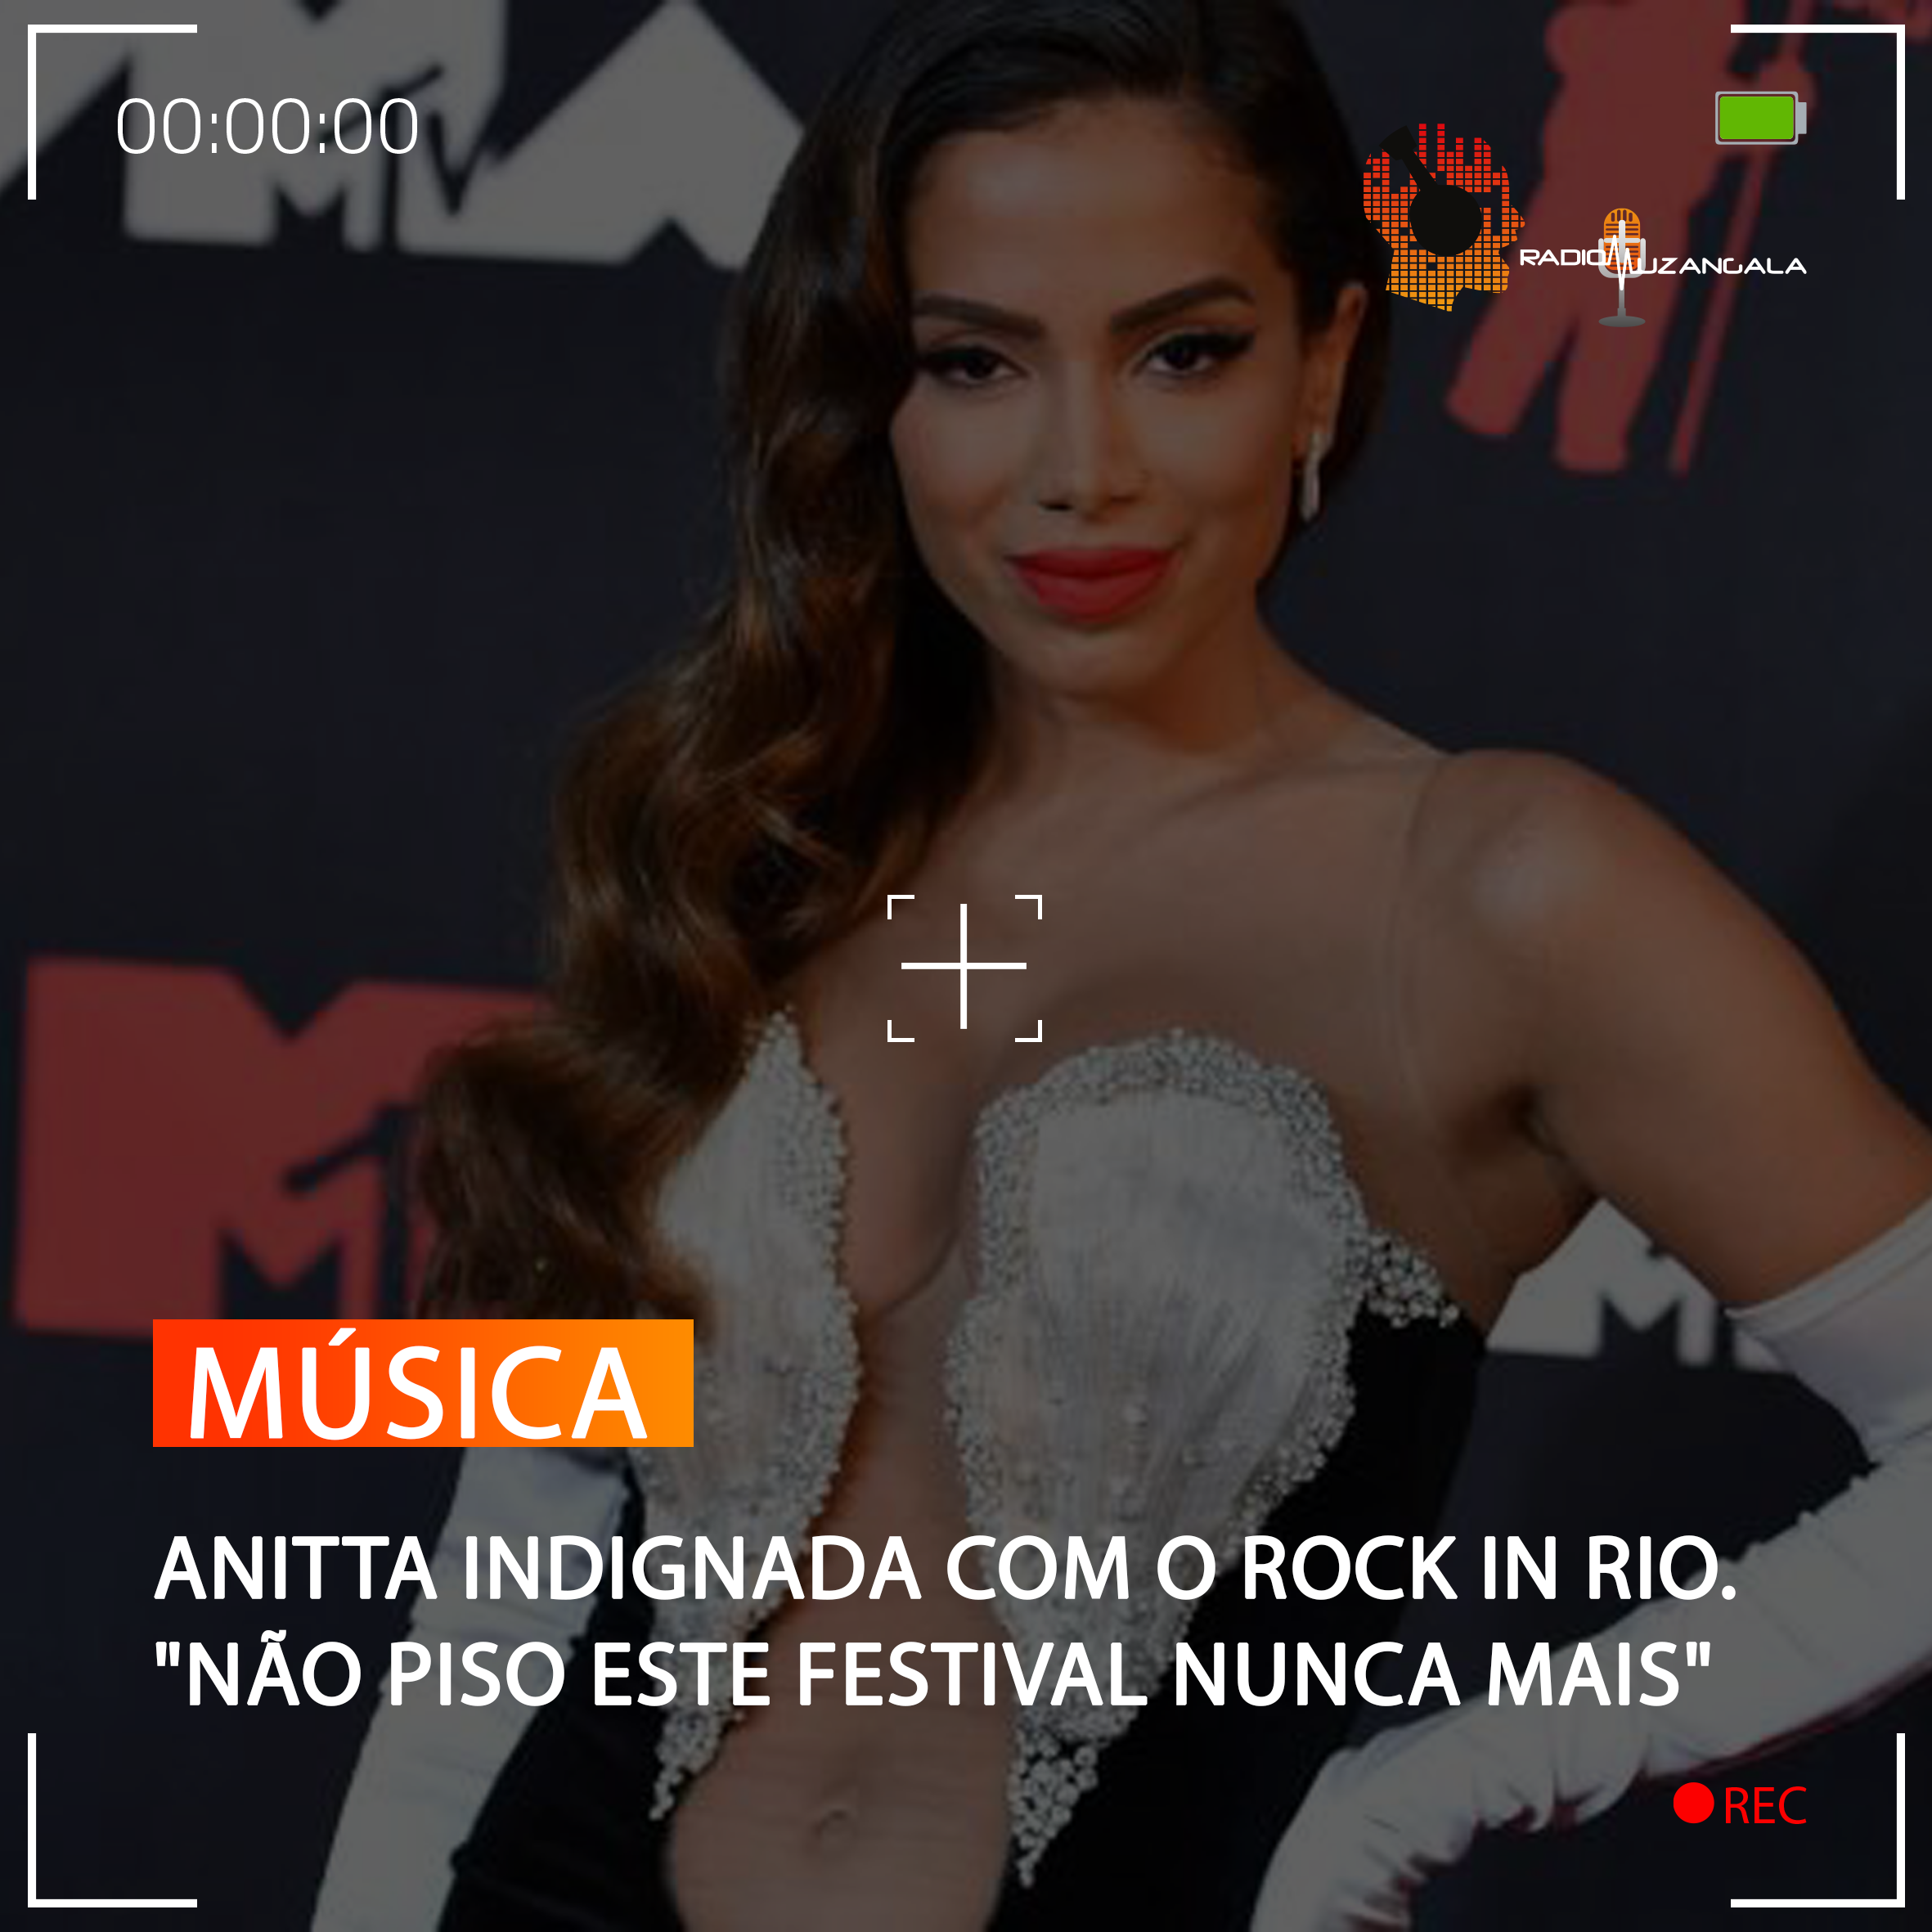  ANITTA INDIGNADA COM O ROCK IN RIO. “NÃO PISO ESTE FESTIVAL NUNCA MAIS”